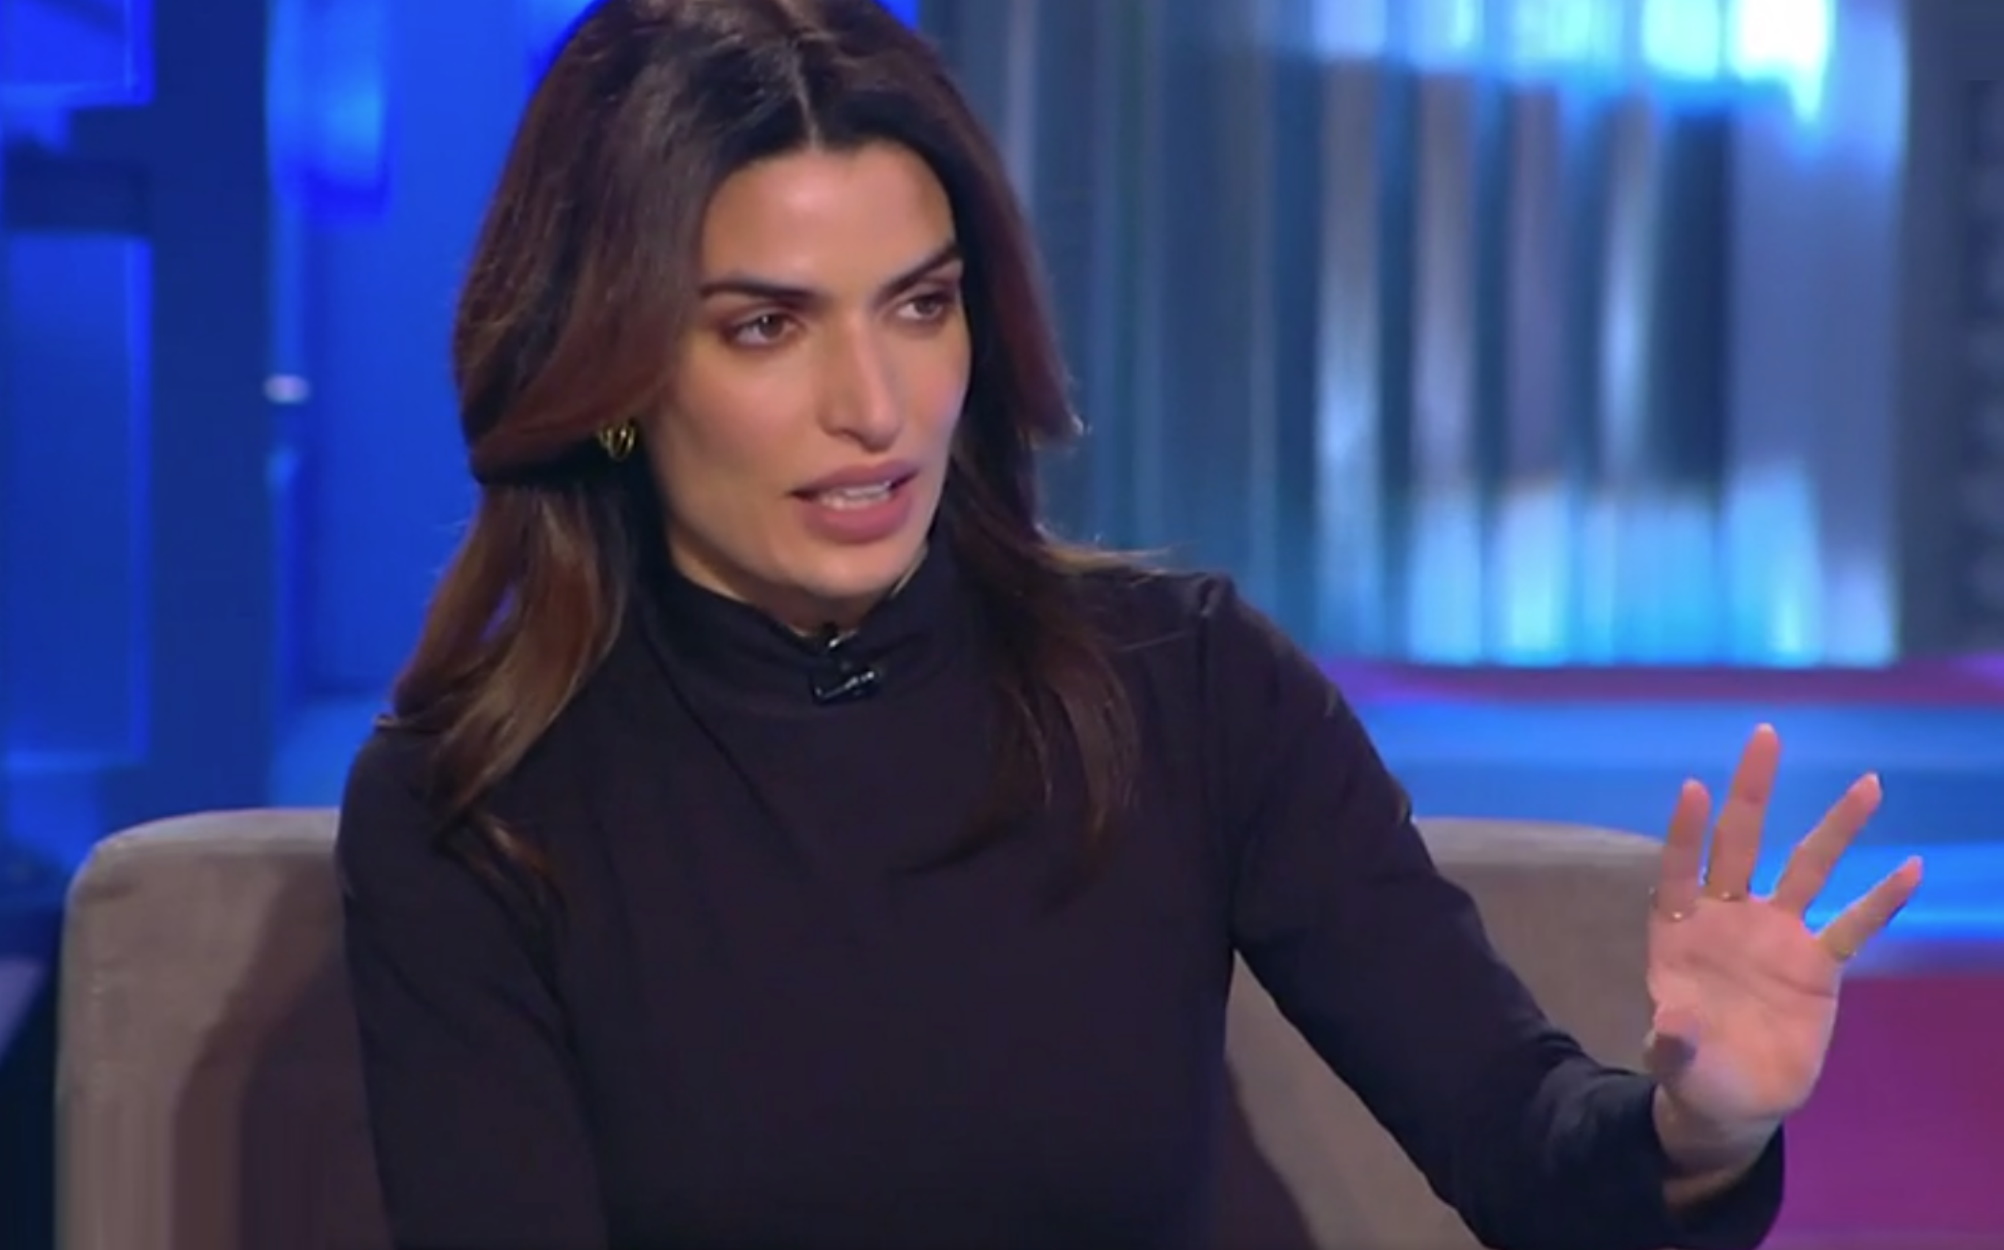 Τόνια Σωτηροπούλου: Για ποιο λόγο μίλησε δημόσια για την κακοποίησή της